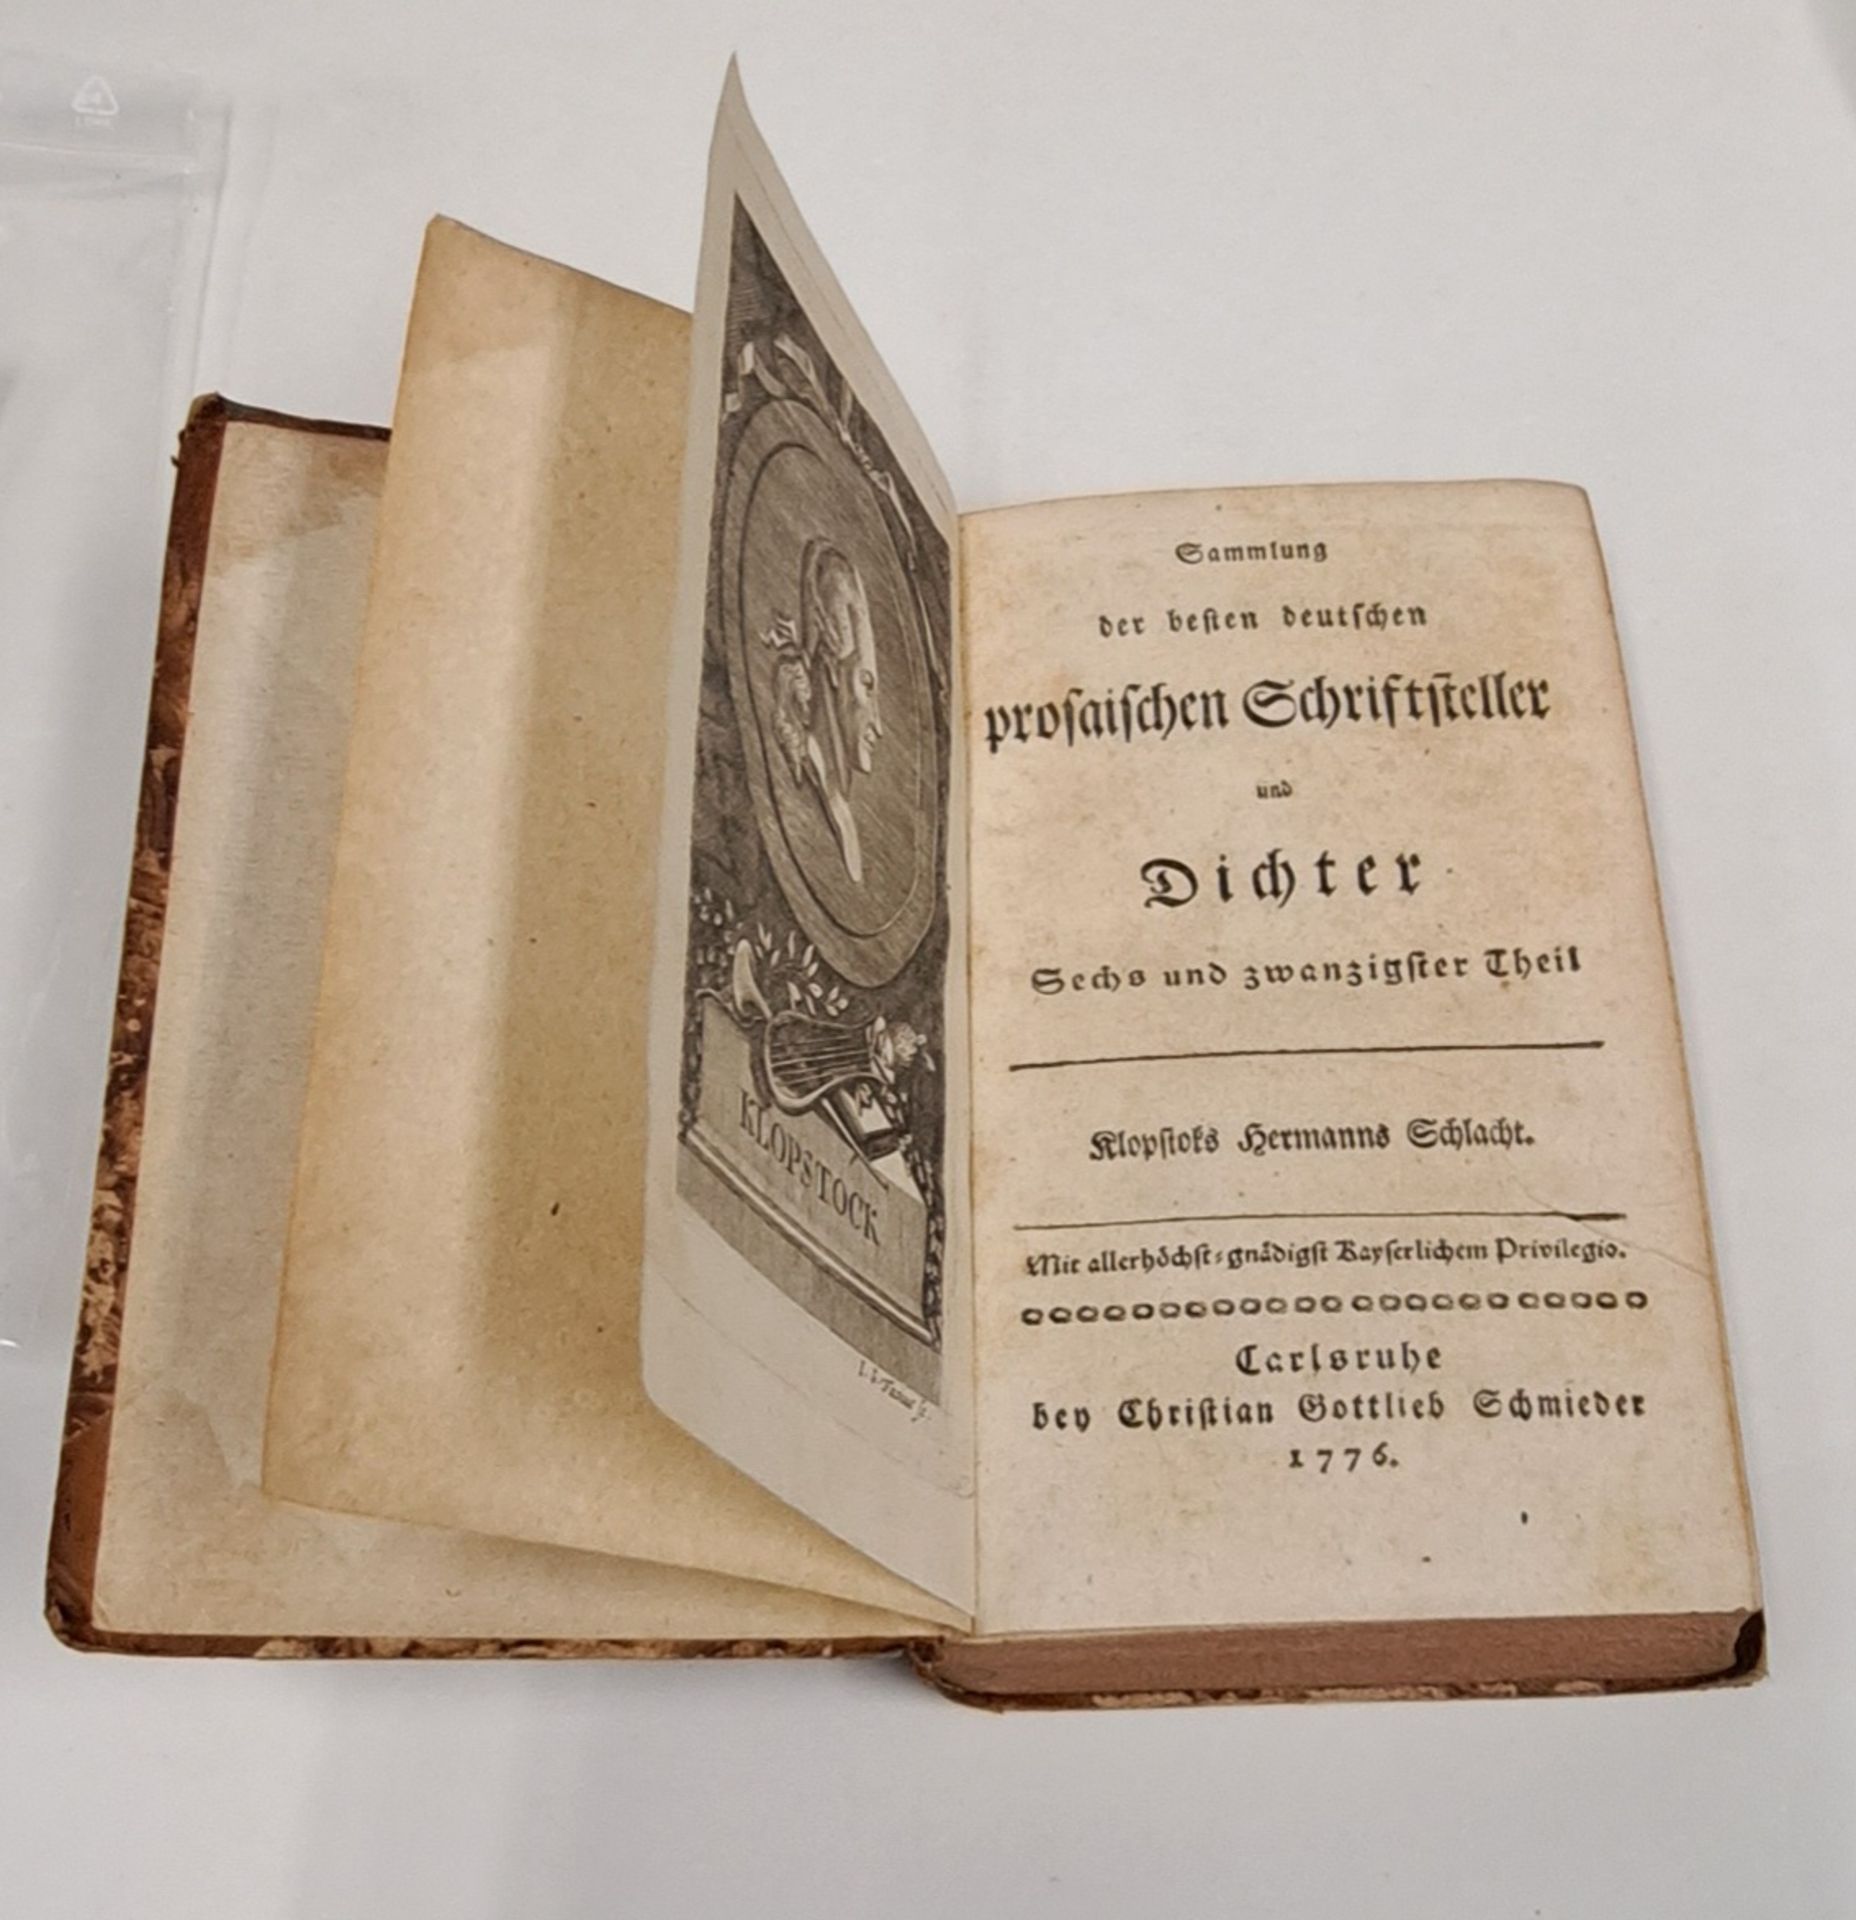 Sammlung prosaischer Schriftsteller 1776